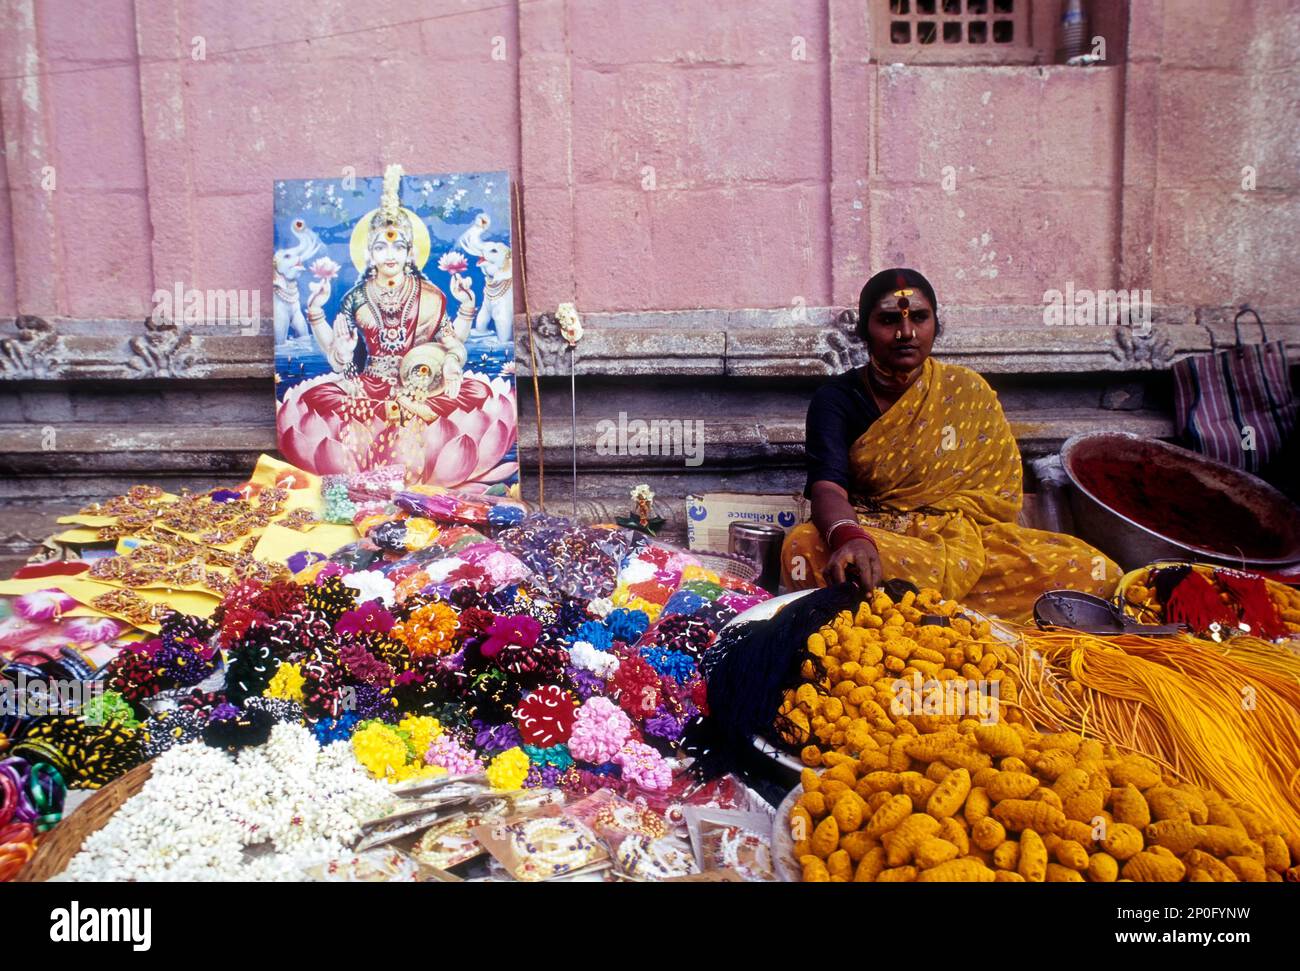 Femme vendant des offrandes religieuses dans les locaux du temple de Palani, Tamil Nadu, Inde, Asie Banque D'Images